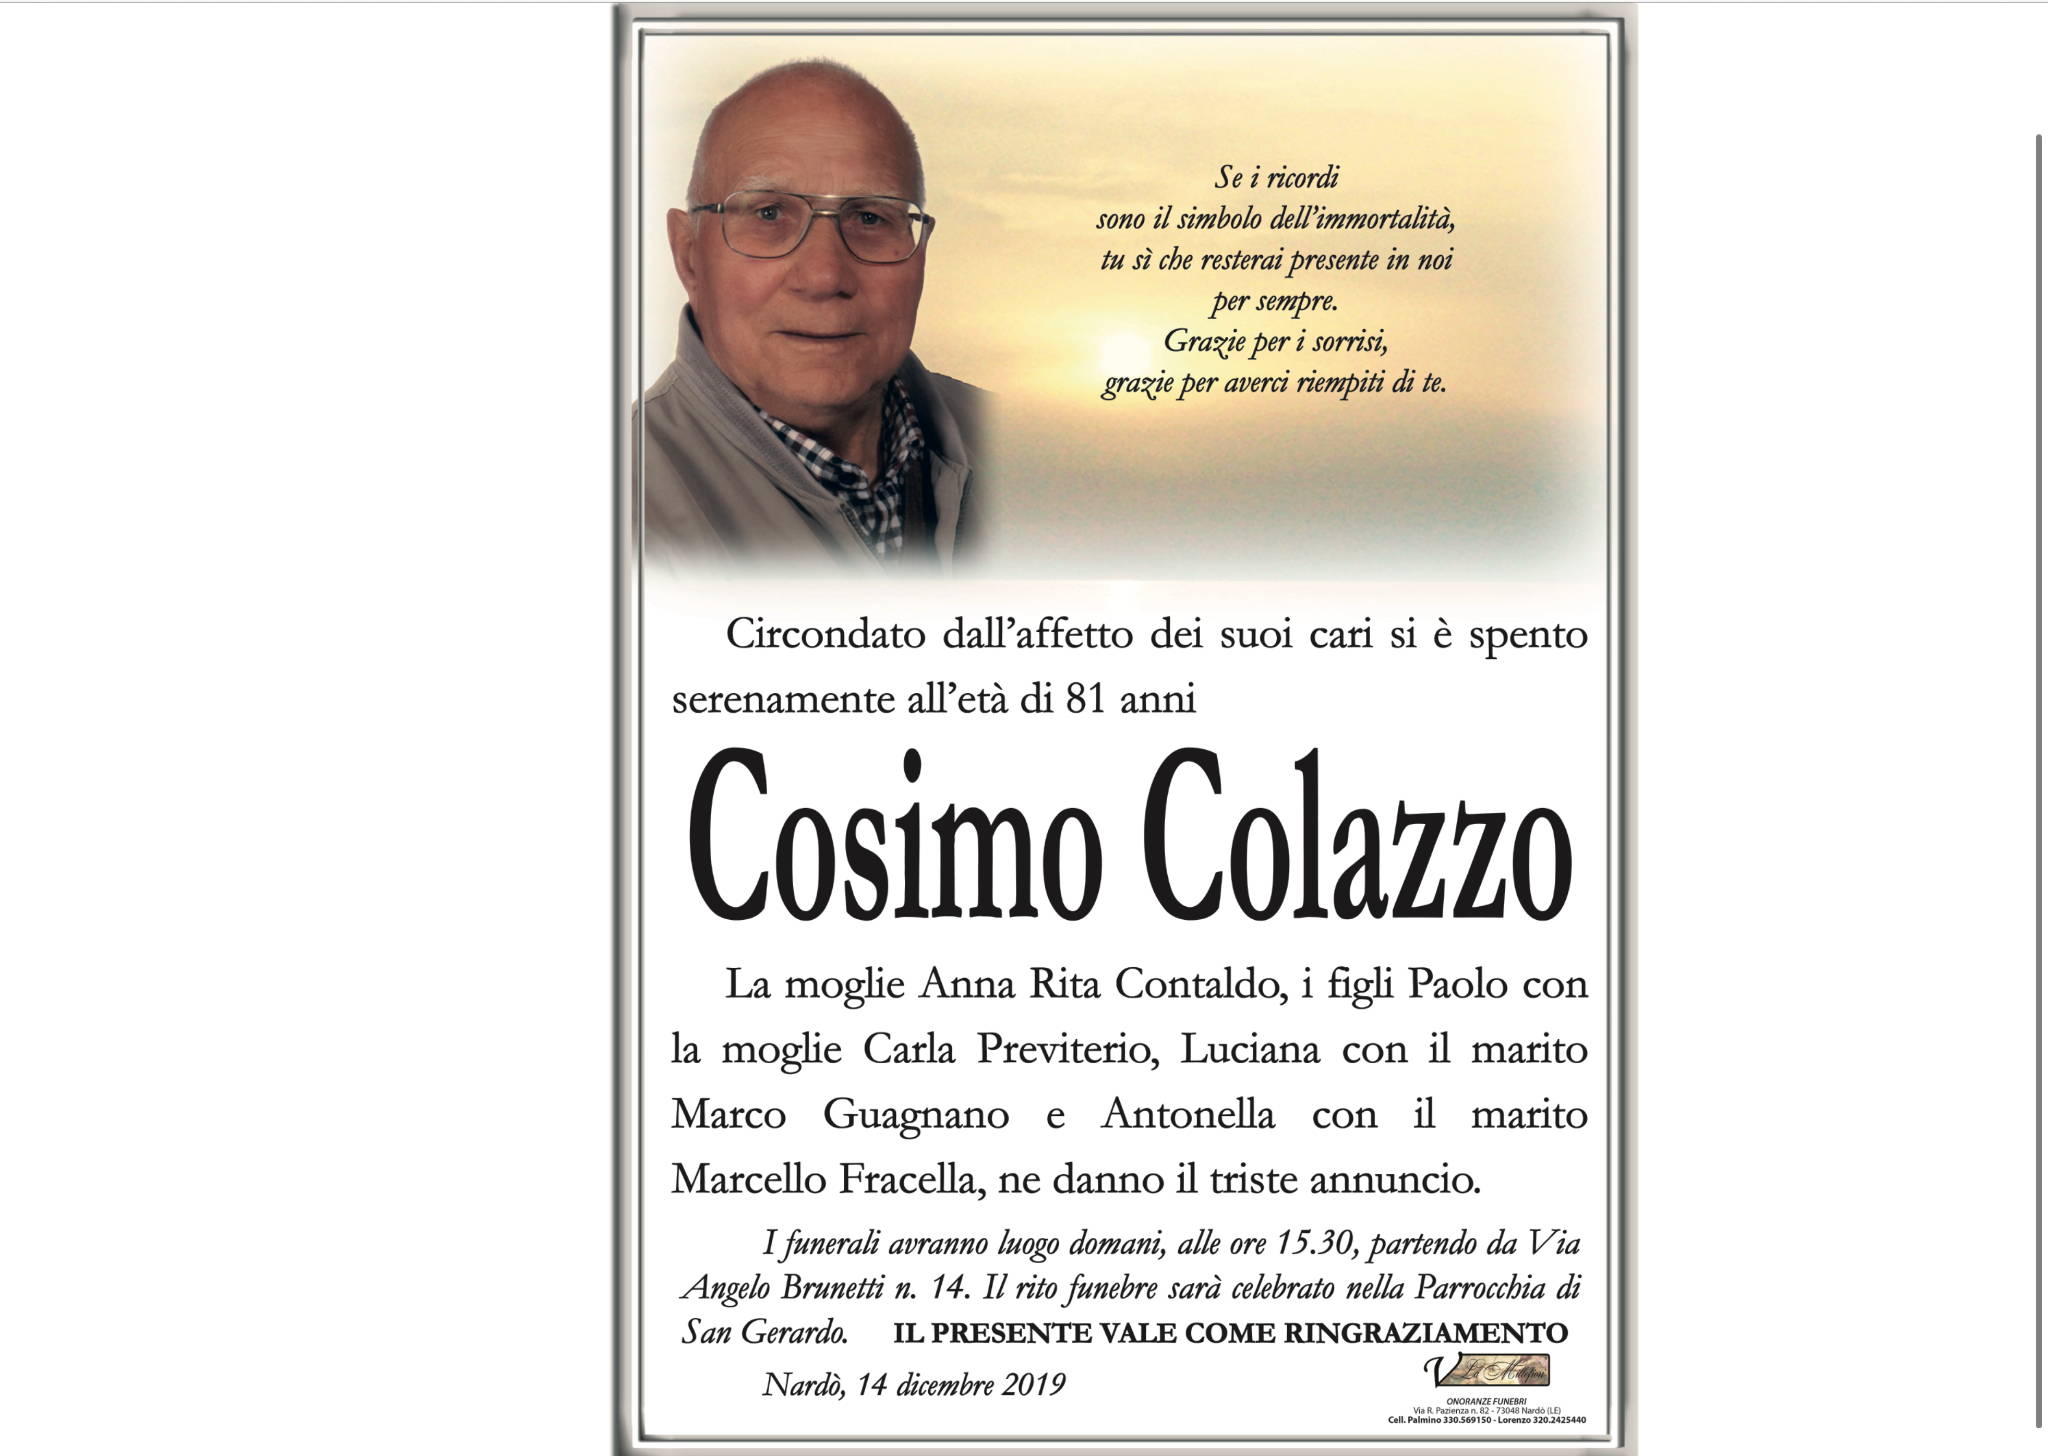 Cosimo Damiano Colazzo